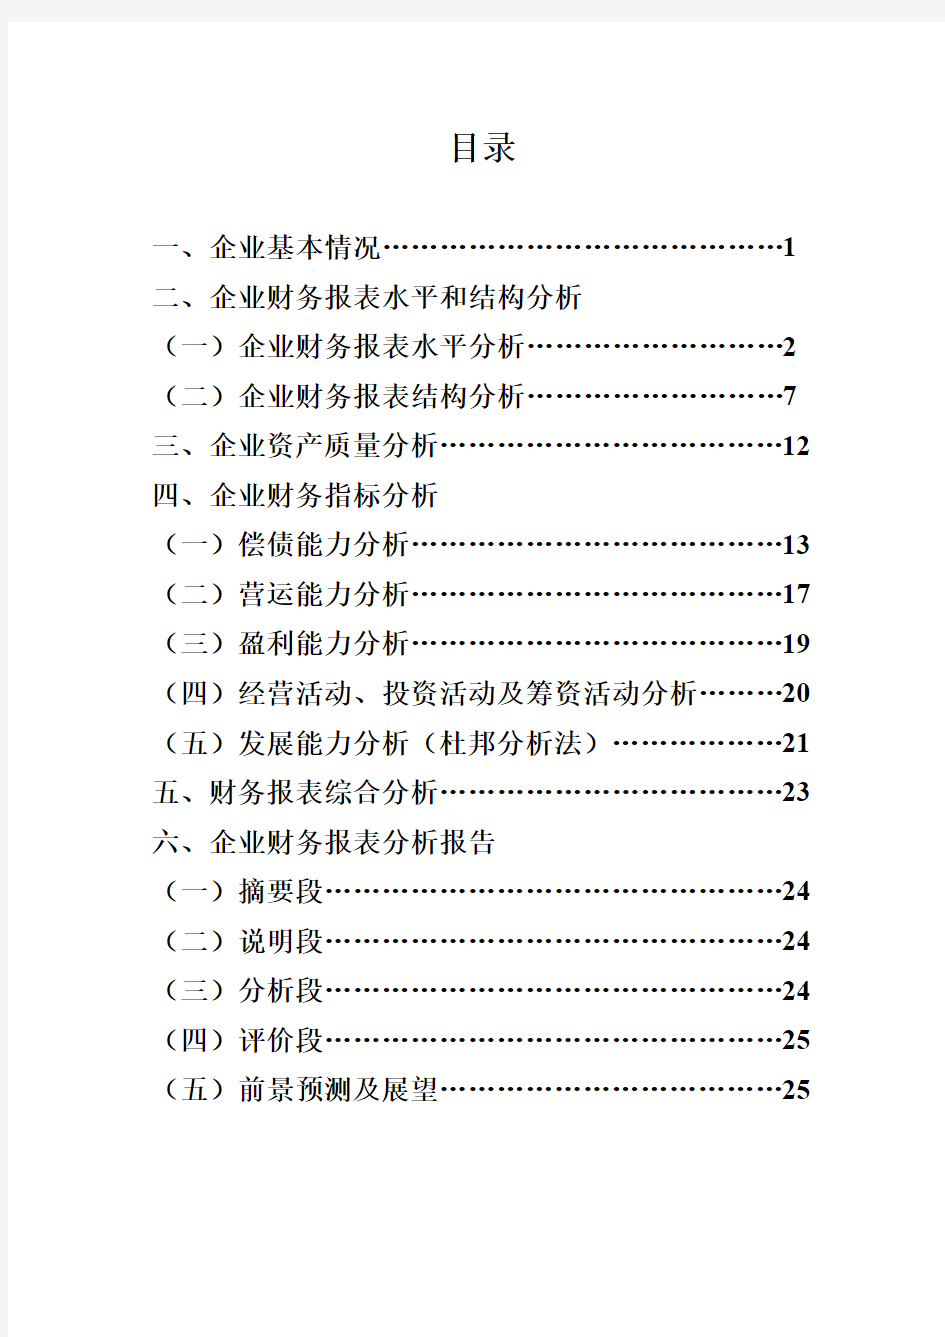 中国石化2014年财务报表分析